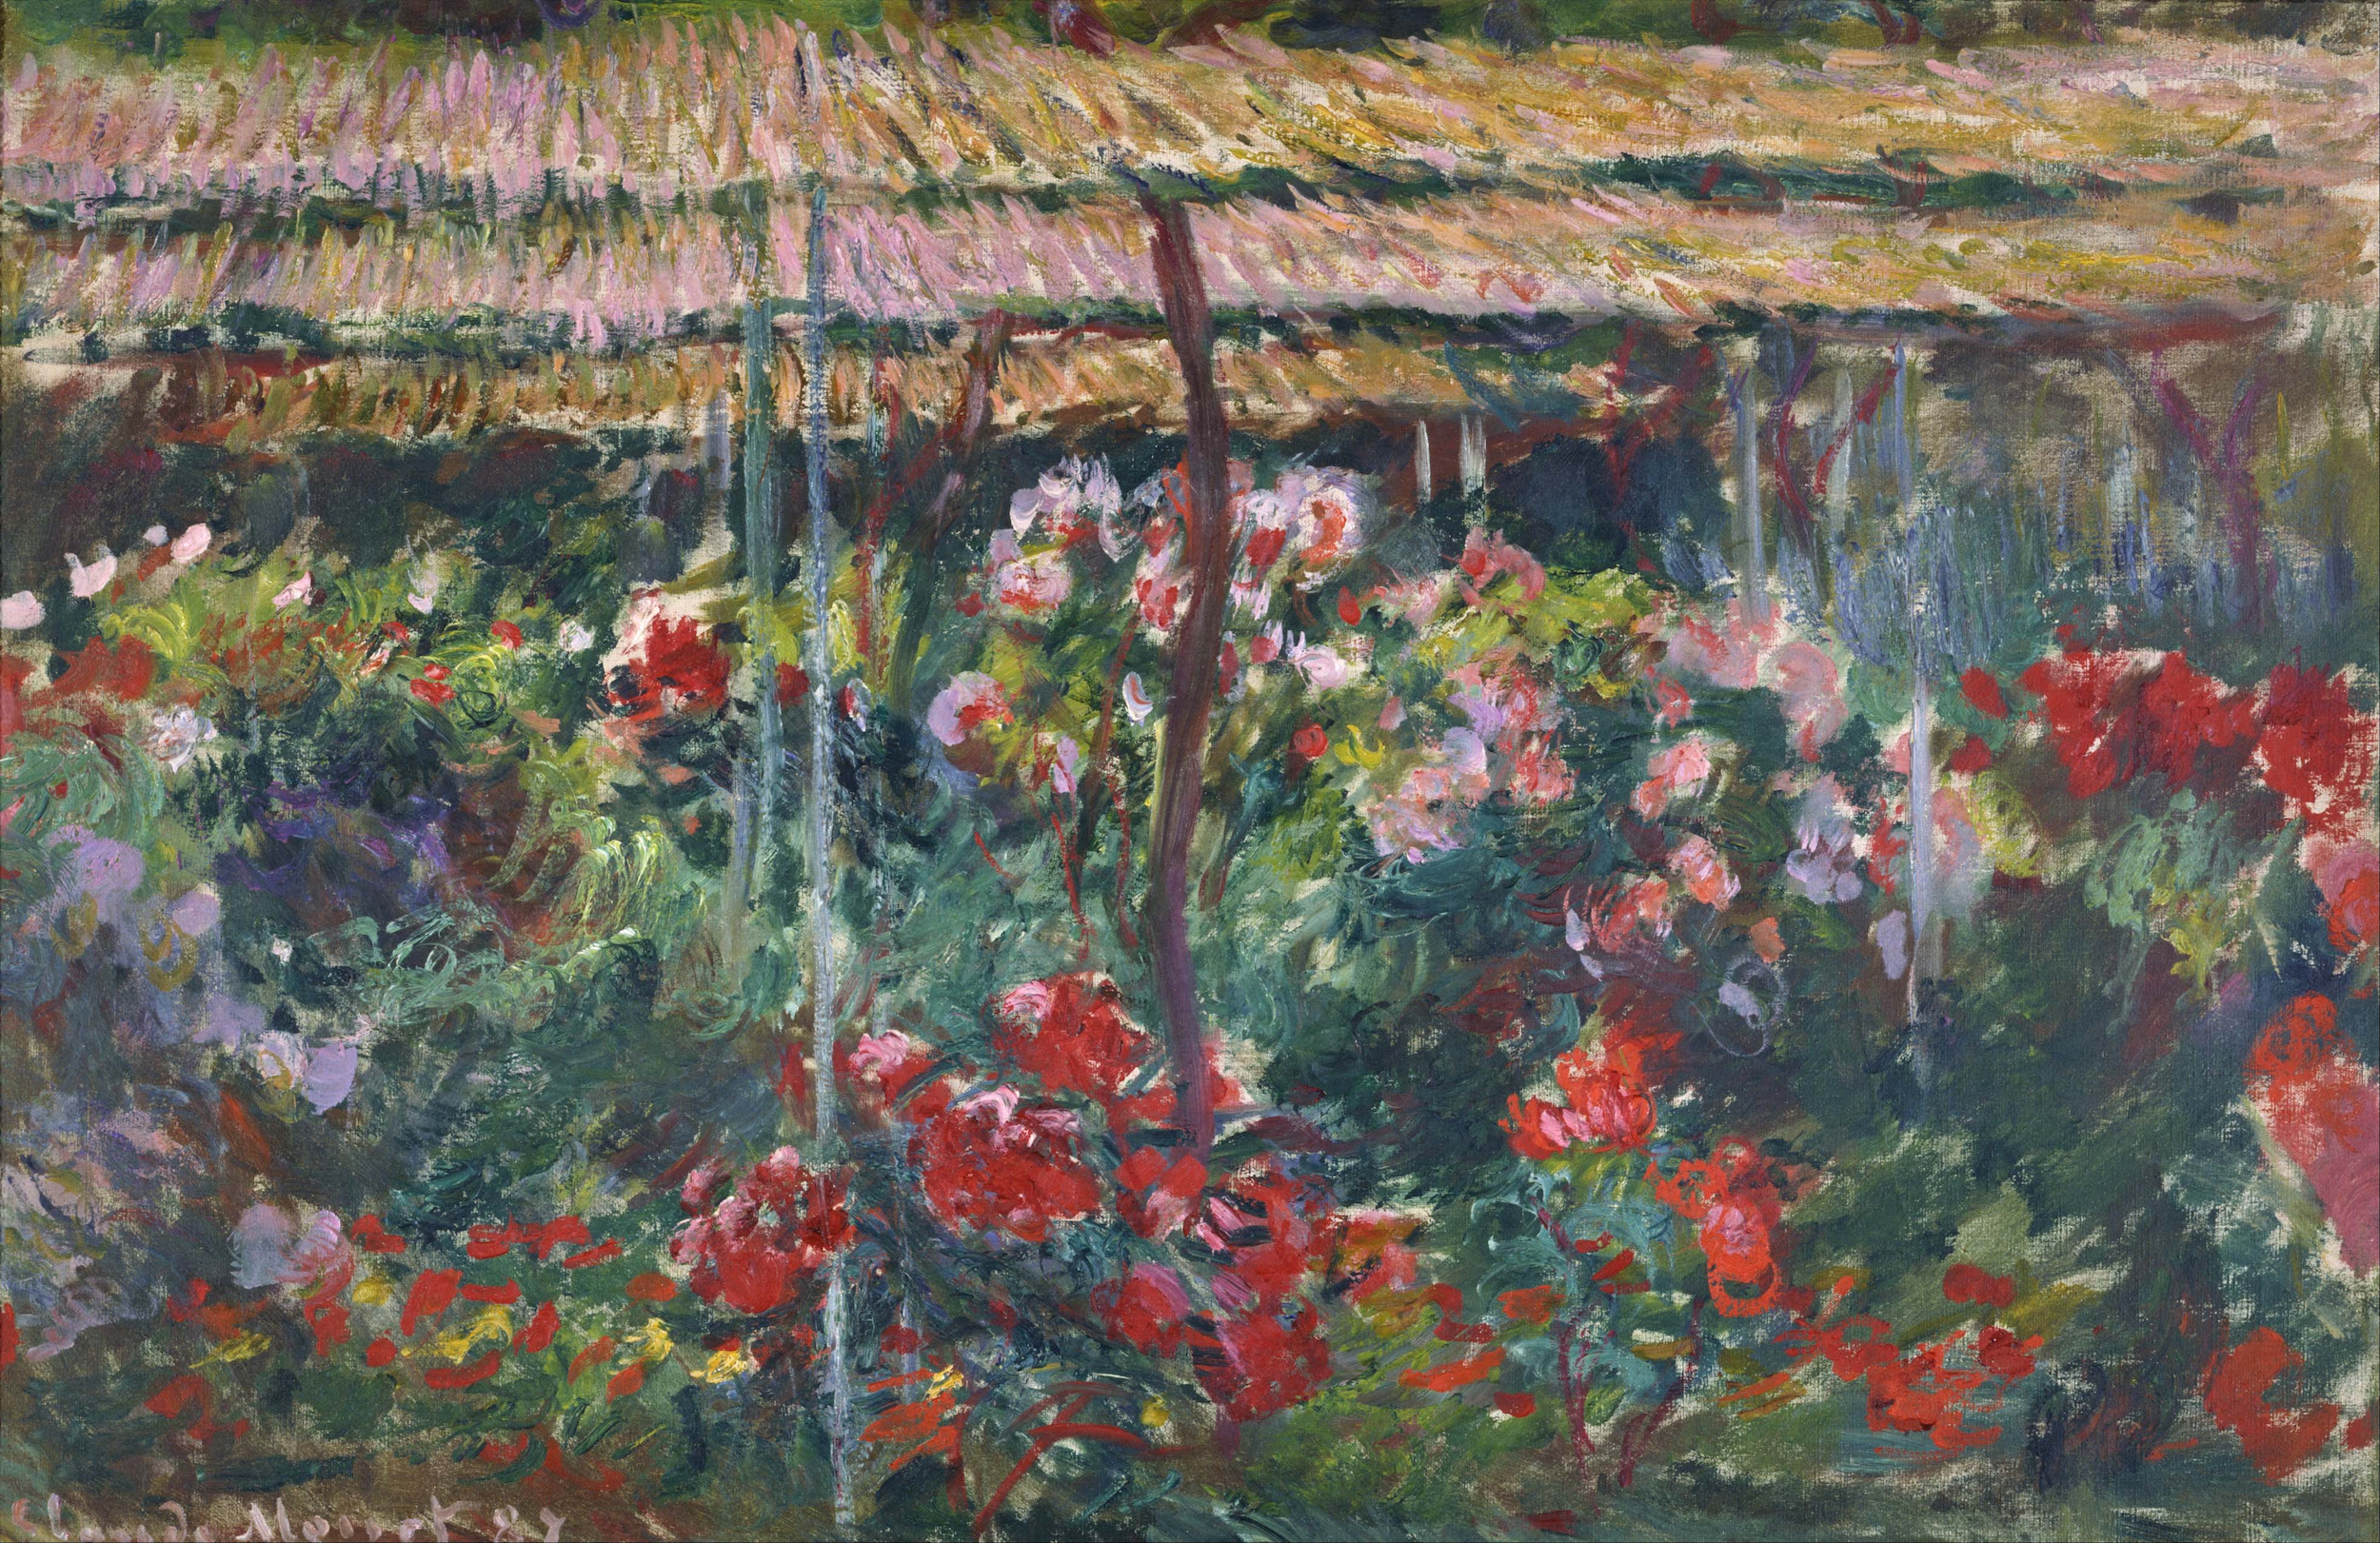 Le jardin aux pivoines by Claude Monet - 1887 